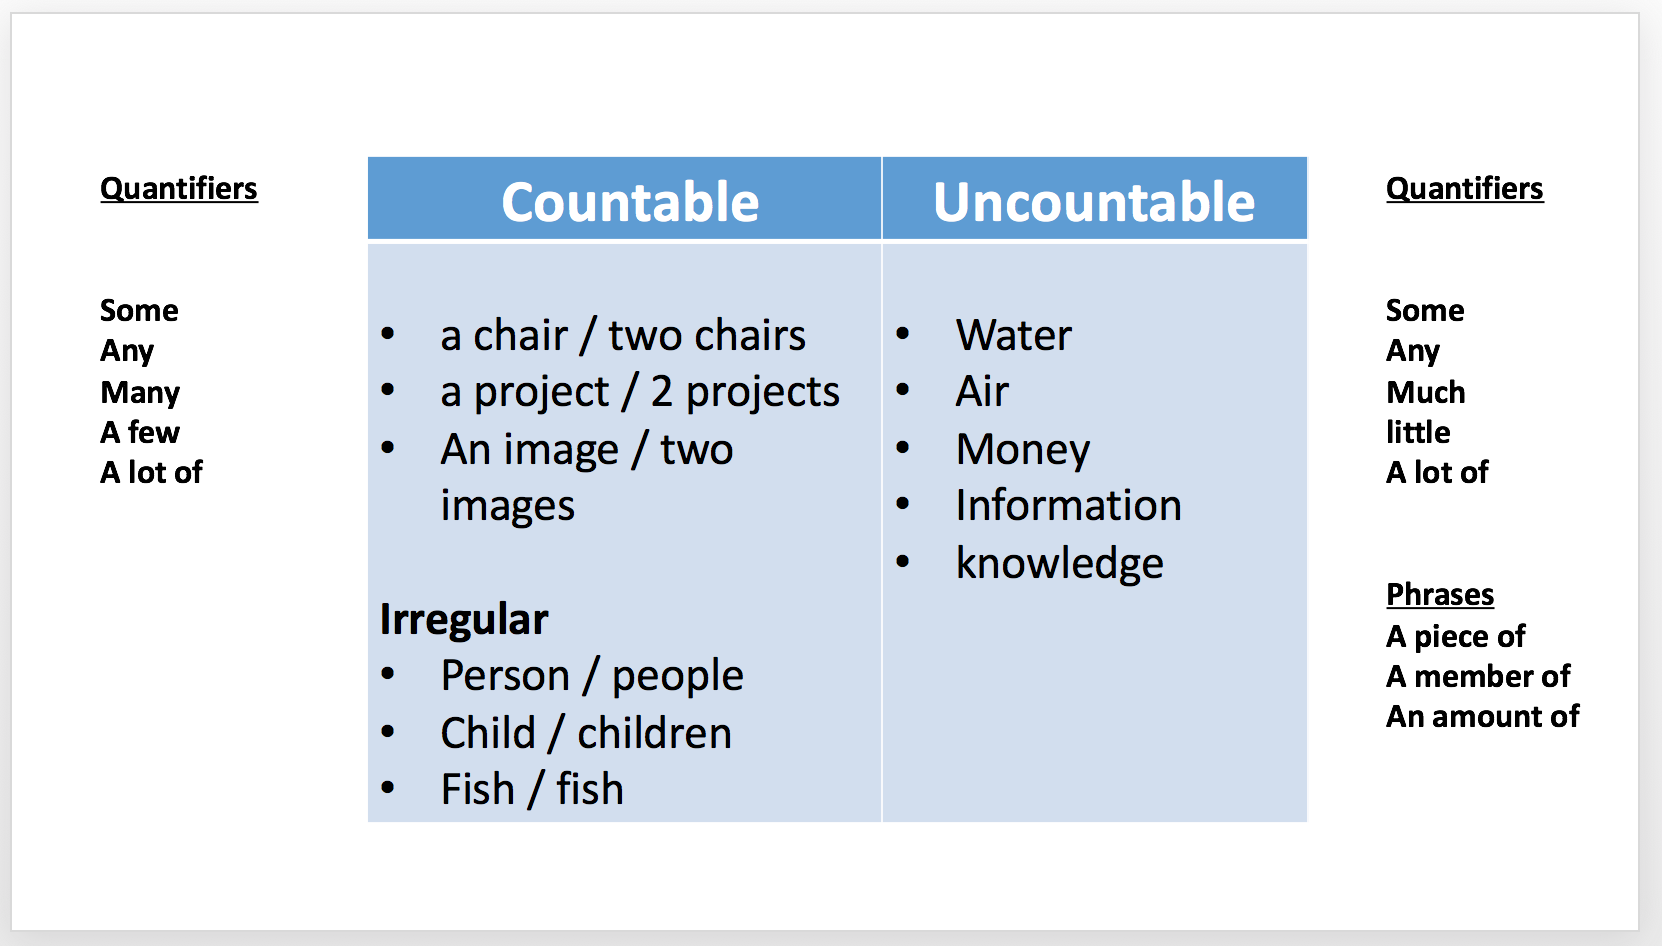 Uncountable перевод. Quantifiers. Quantifiers в английском. Countable and uncountable quantifiers. Quantifiers таблица.